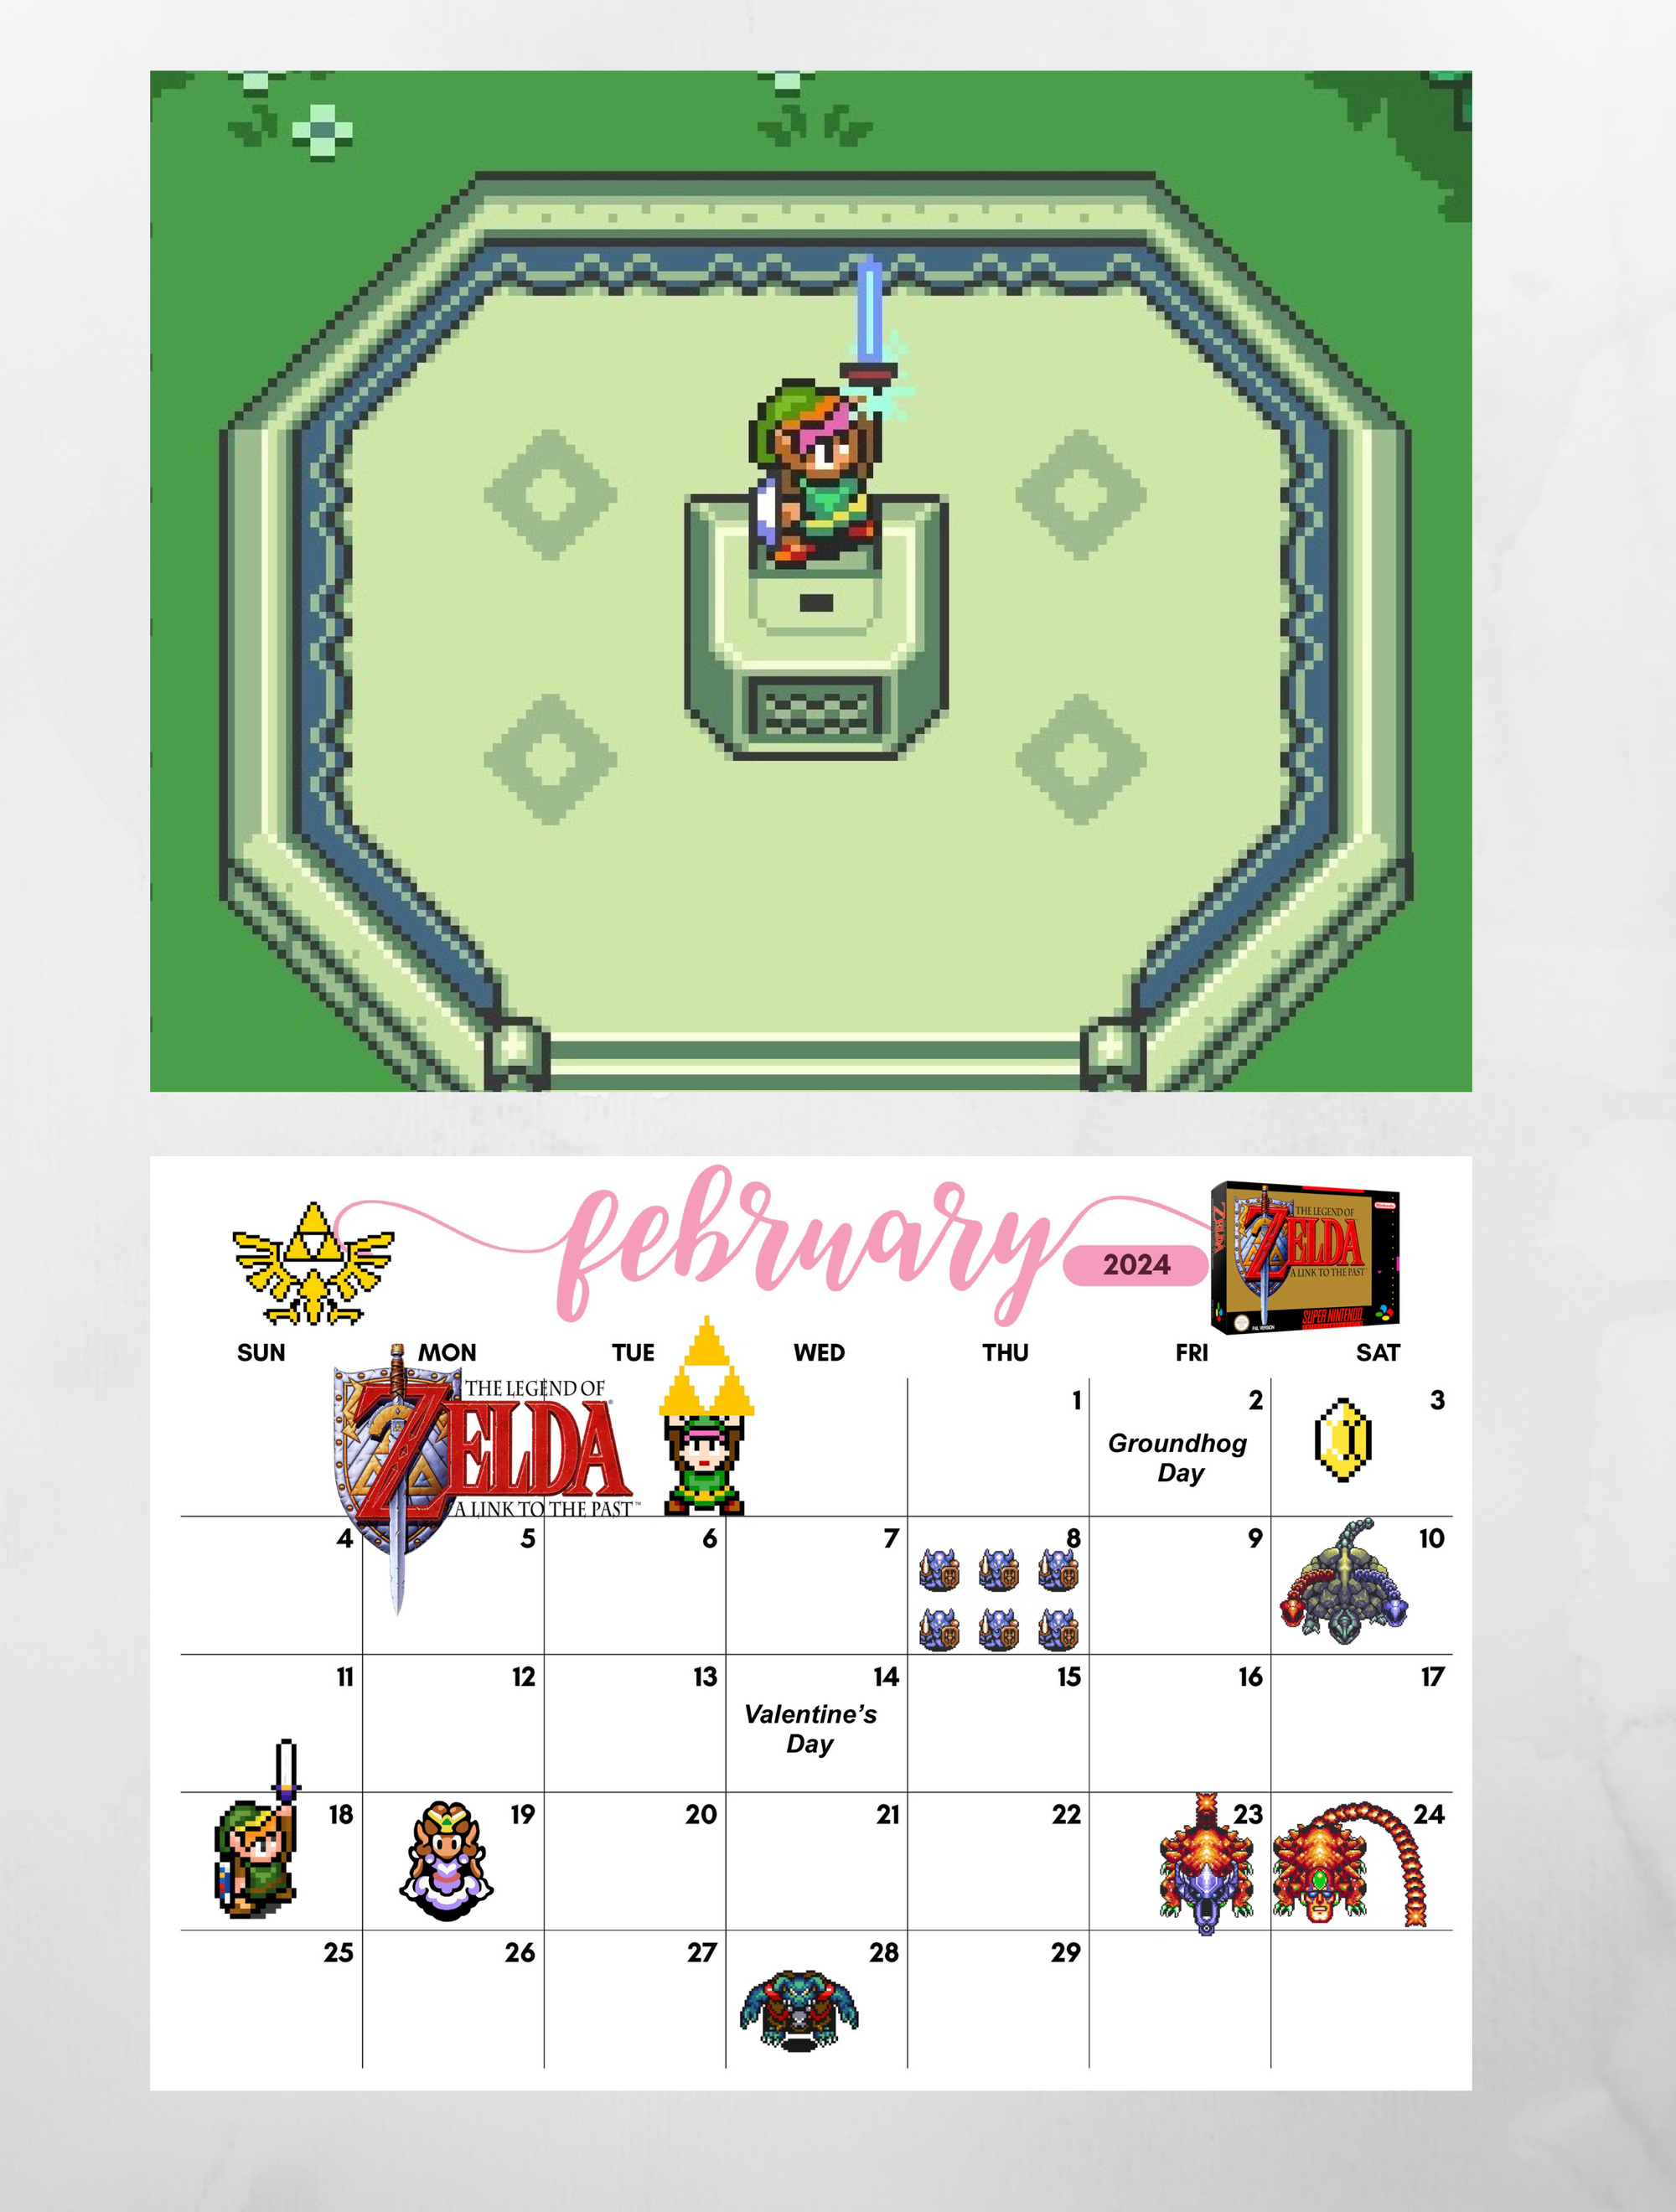 Legend of Zelda 2024 Wall Calendar - Book Summary & Video